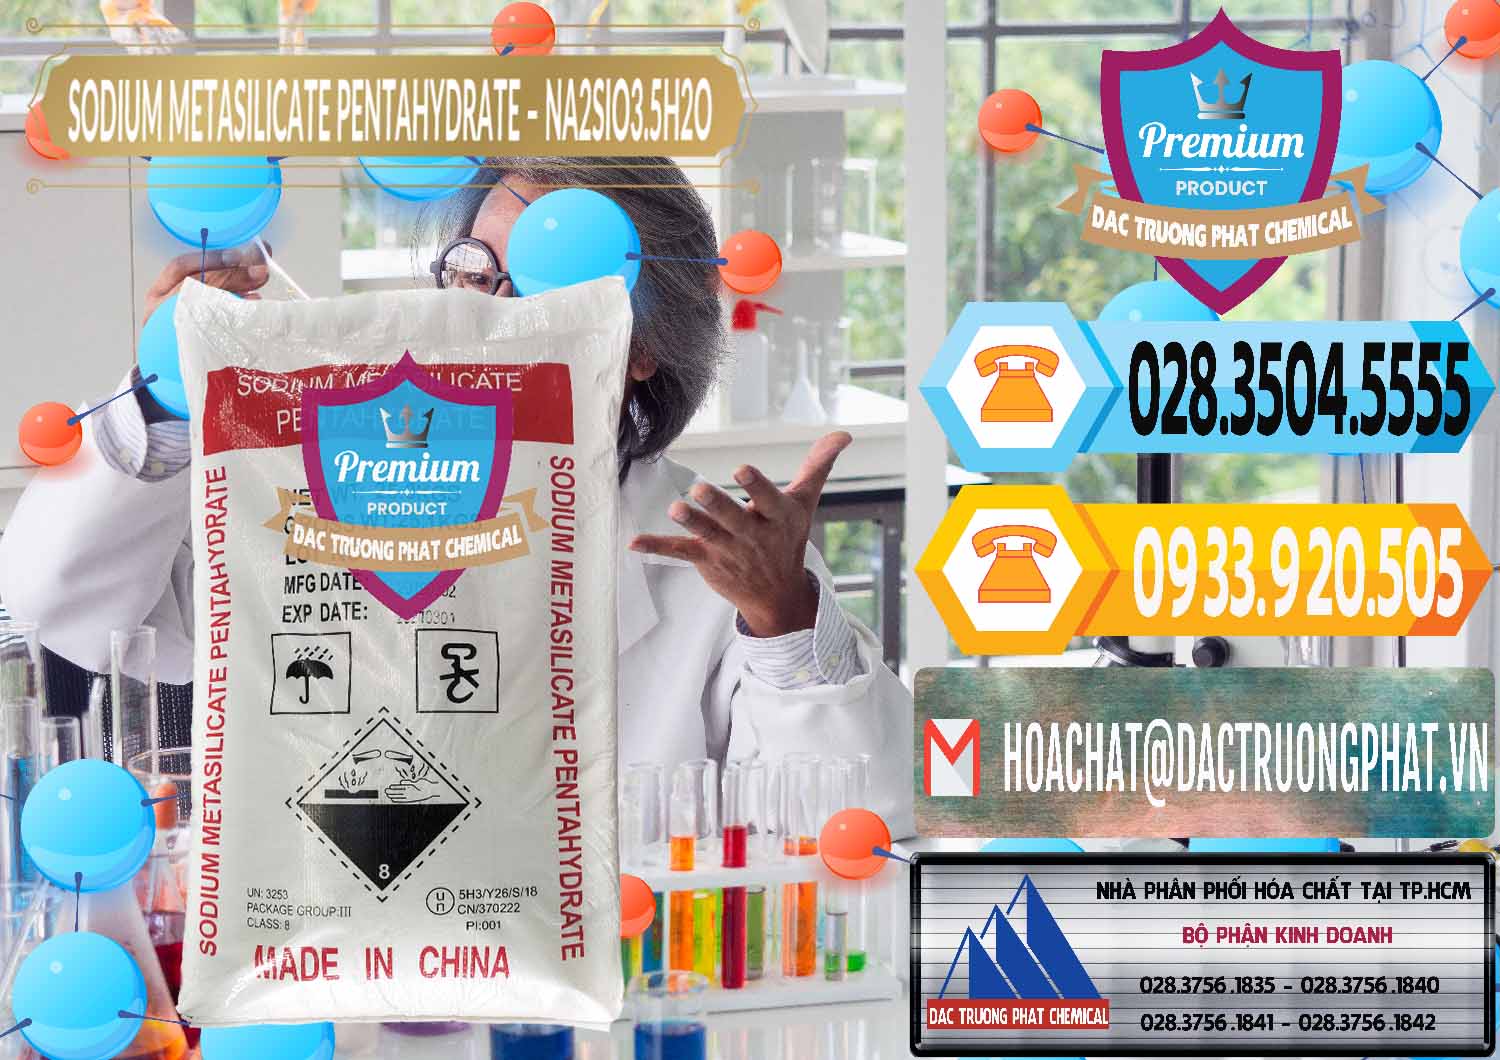 Đơn vị chuyên bán & cung cấp Sodium Metasilicate Pentahydrate – Silicate Bột Trung Quốc China - 0147 - Chuyên cung cấp và phân phối hóa chất tại TP.HCM - hoachattayrua.net